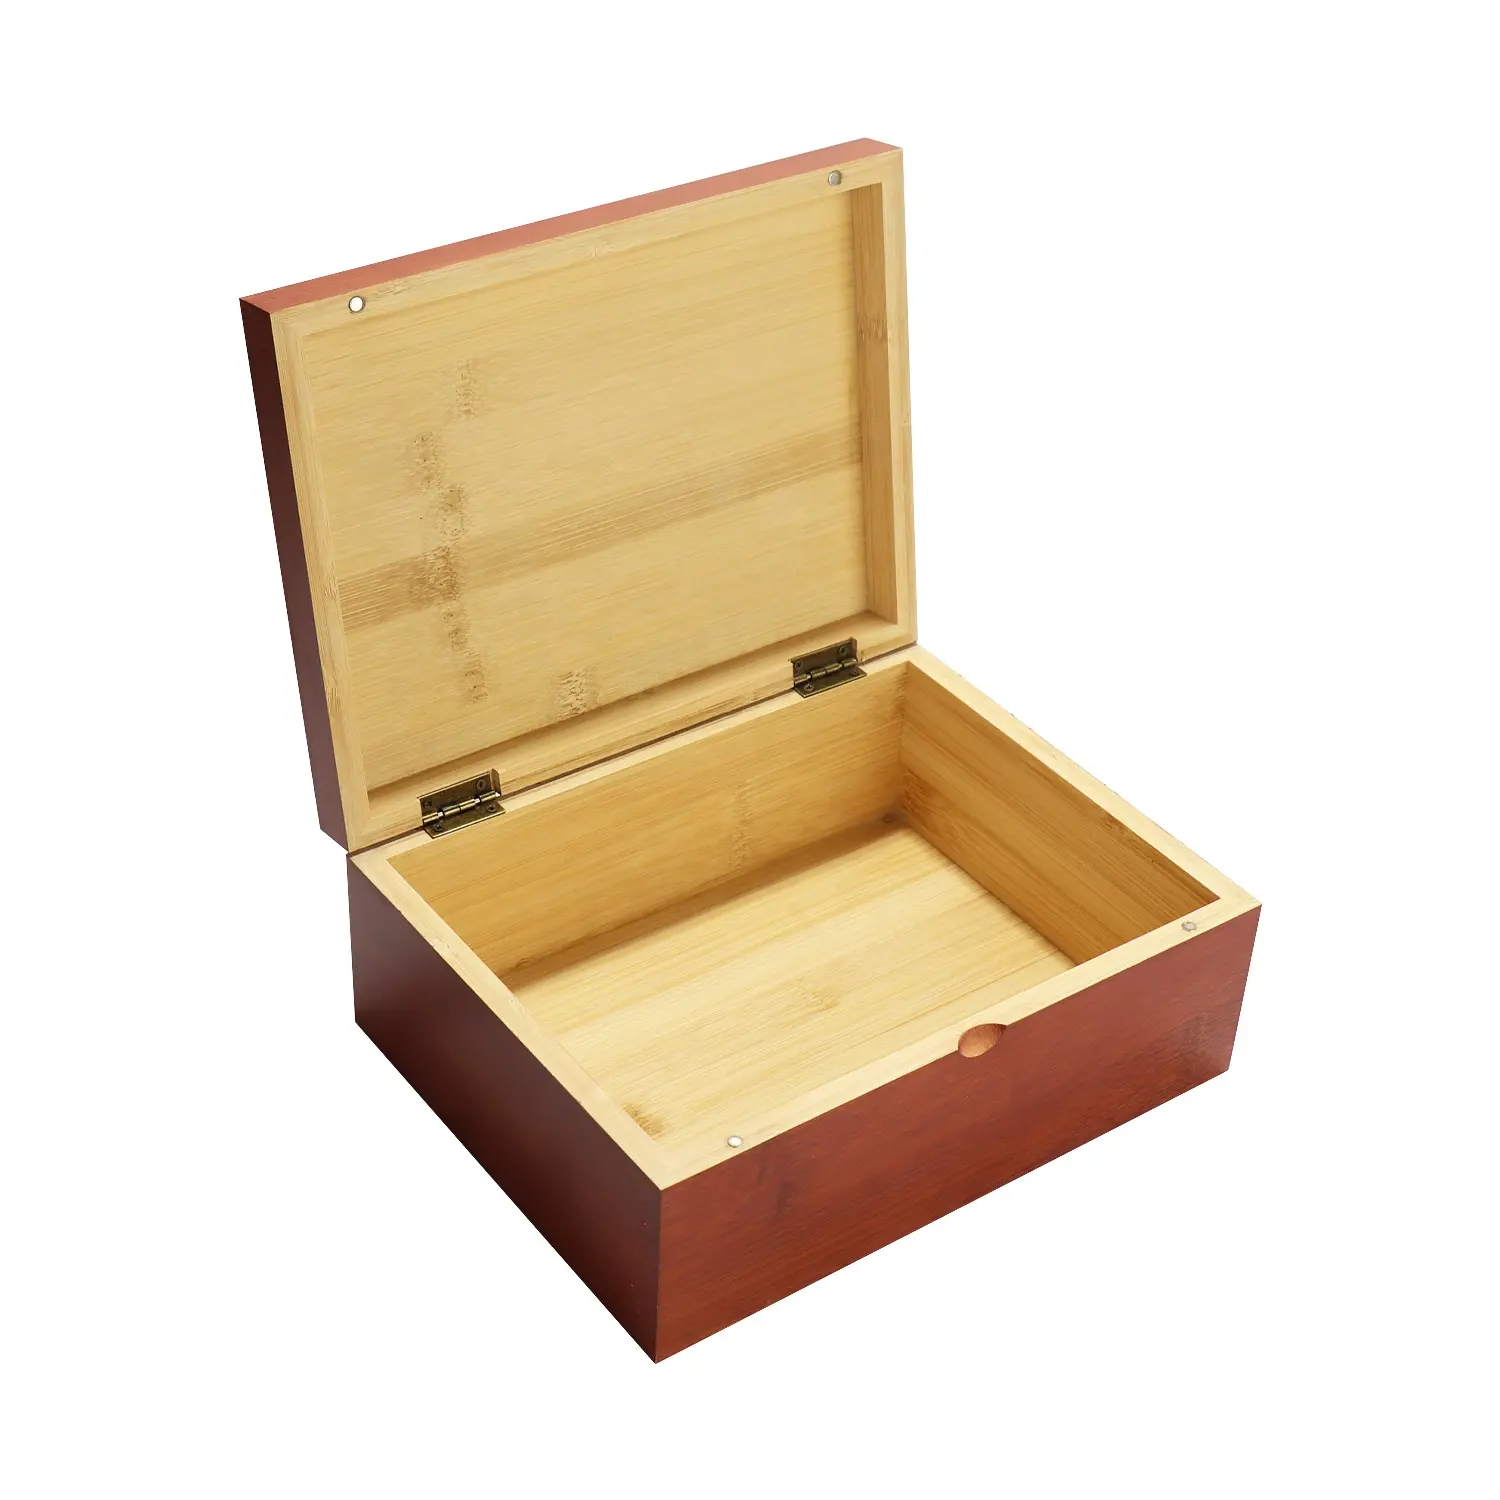 Holz & Bambus Verpackung Schmuck Geschenk boxen Holz Desktop Lagerung Organizer Container Craft Box mit Deckel